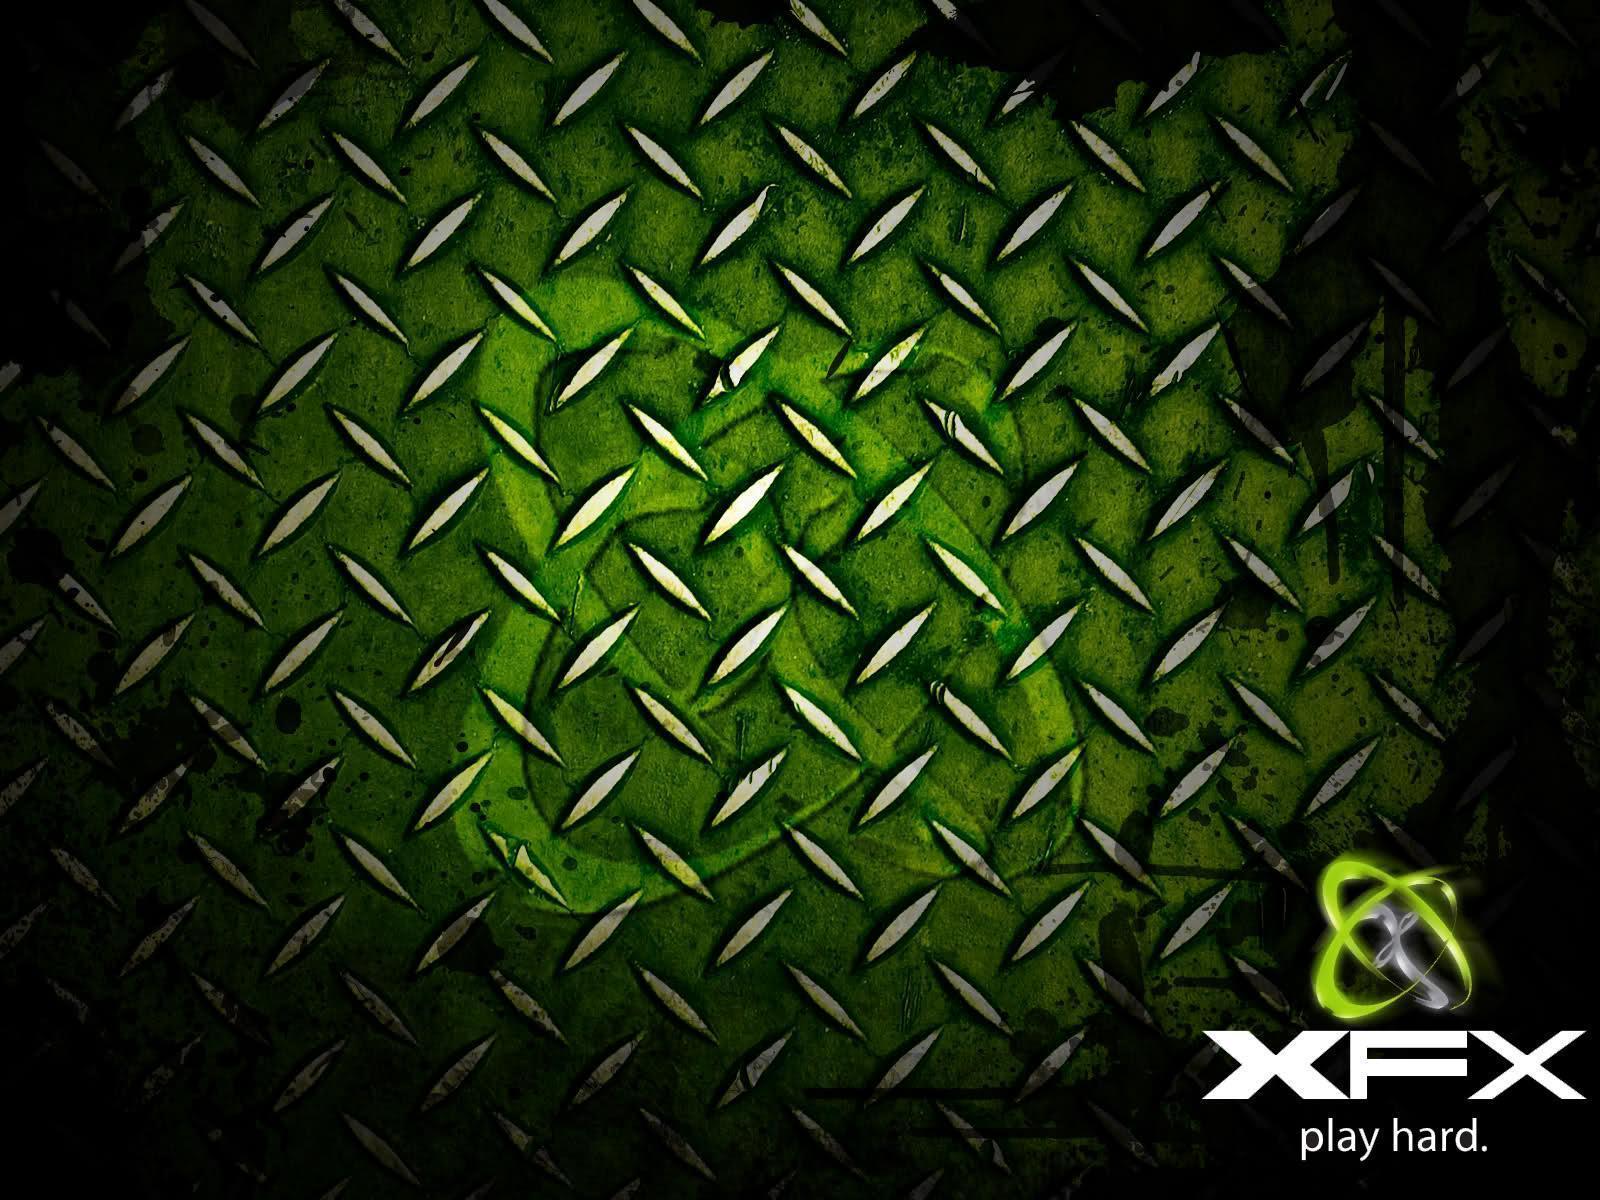 Xfx Wallpaper